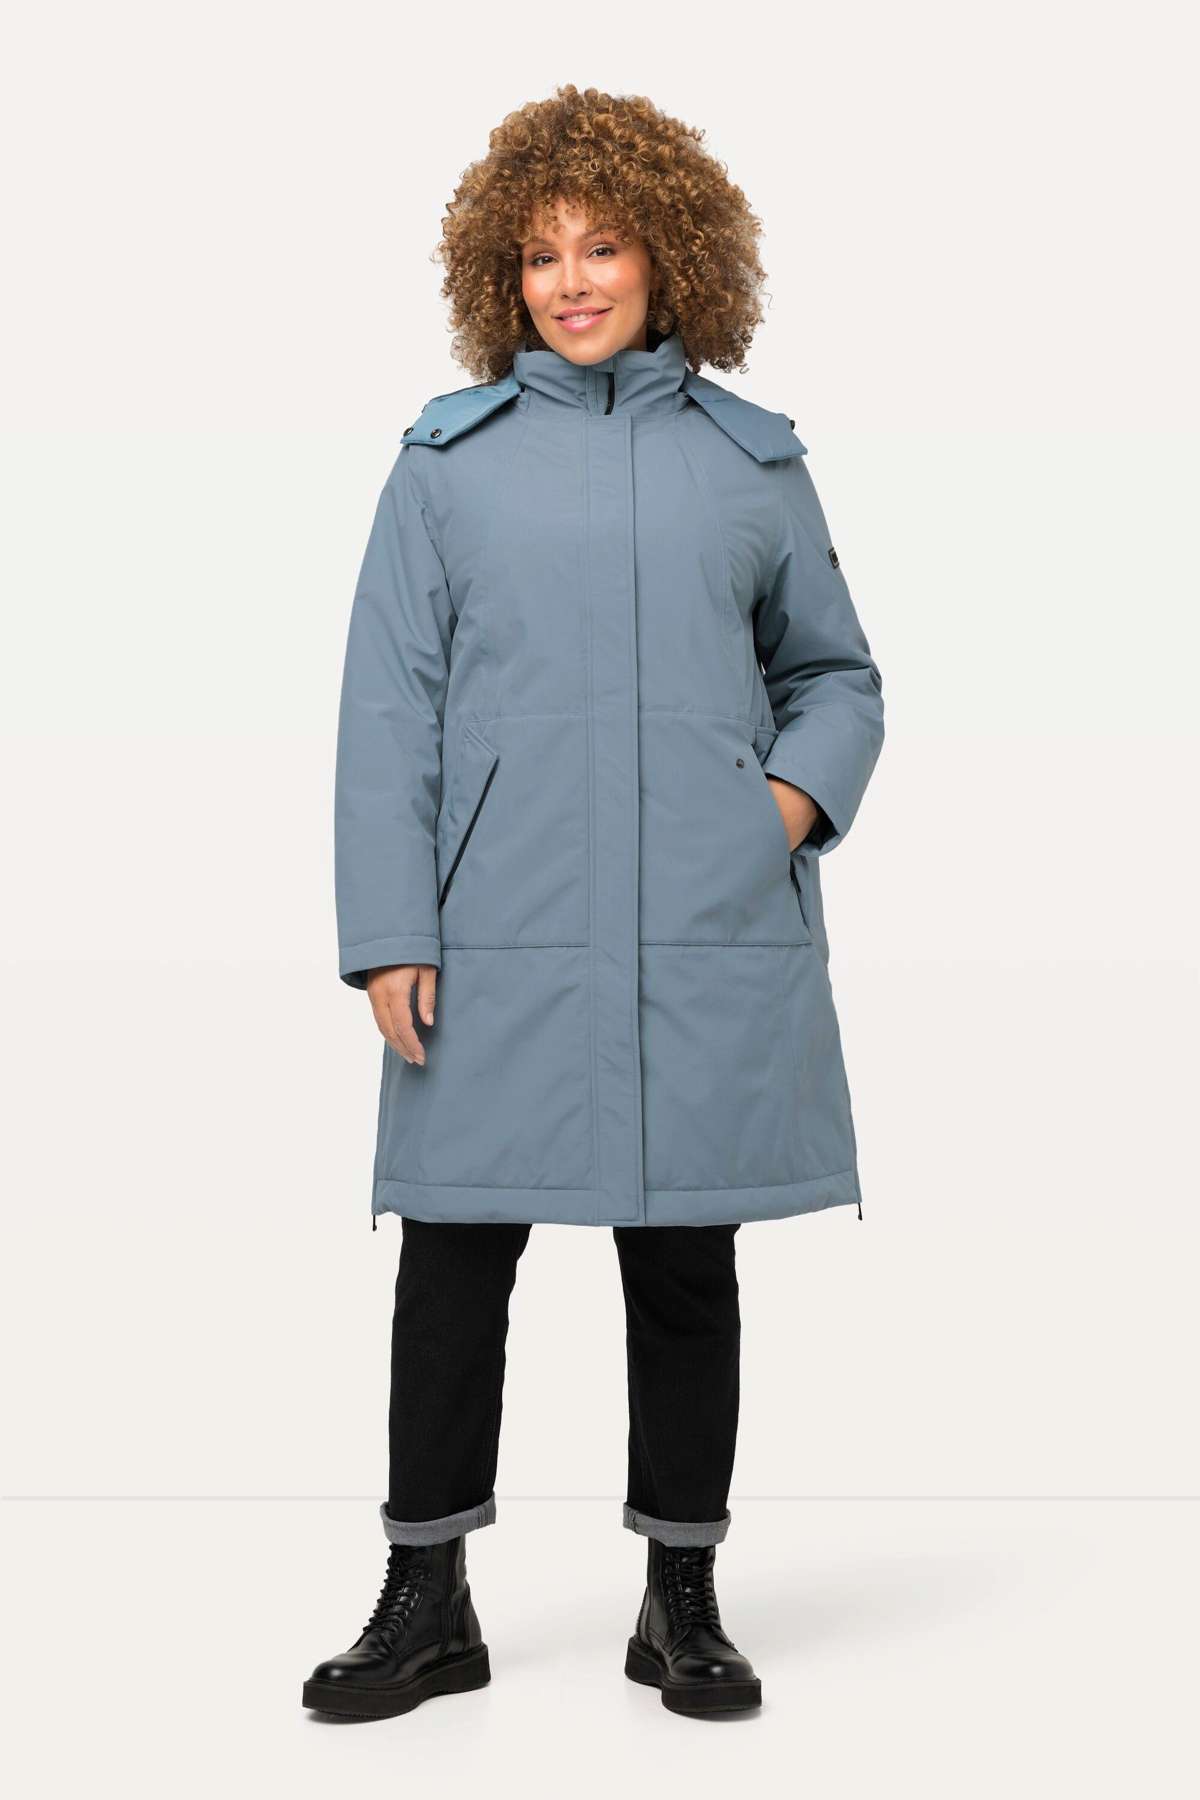 Парка HYPRAR функциональная куртка, непромокаемая, со съемным капюшоном